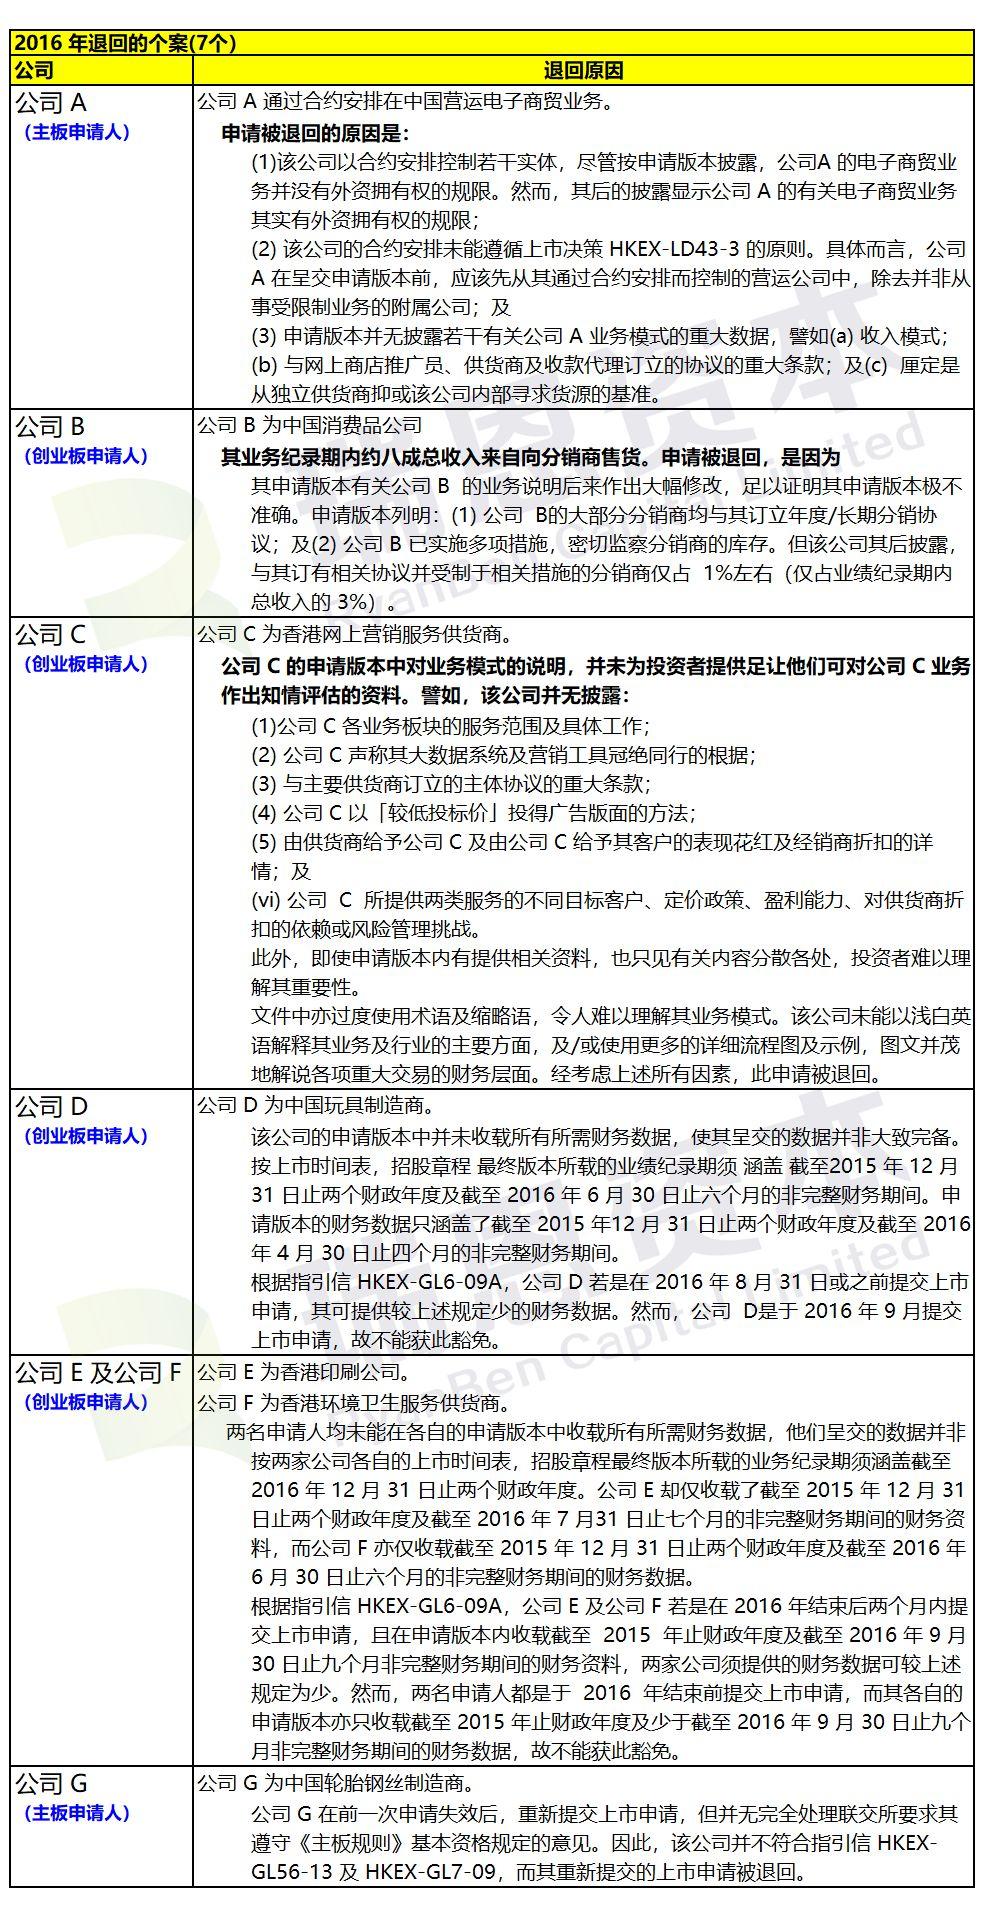 香港IPO上市申請失敗：被聯交所退回的43個案例匯總(2013-2017年)